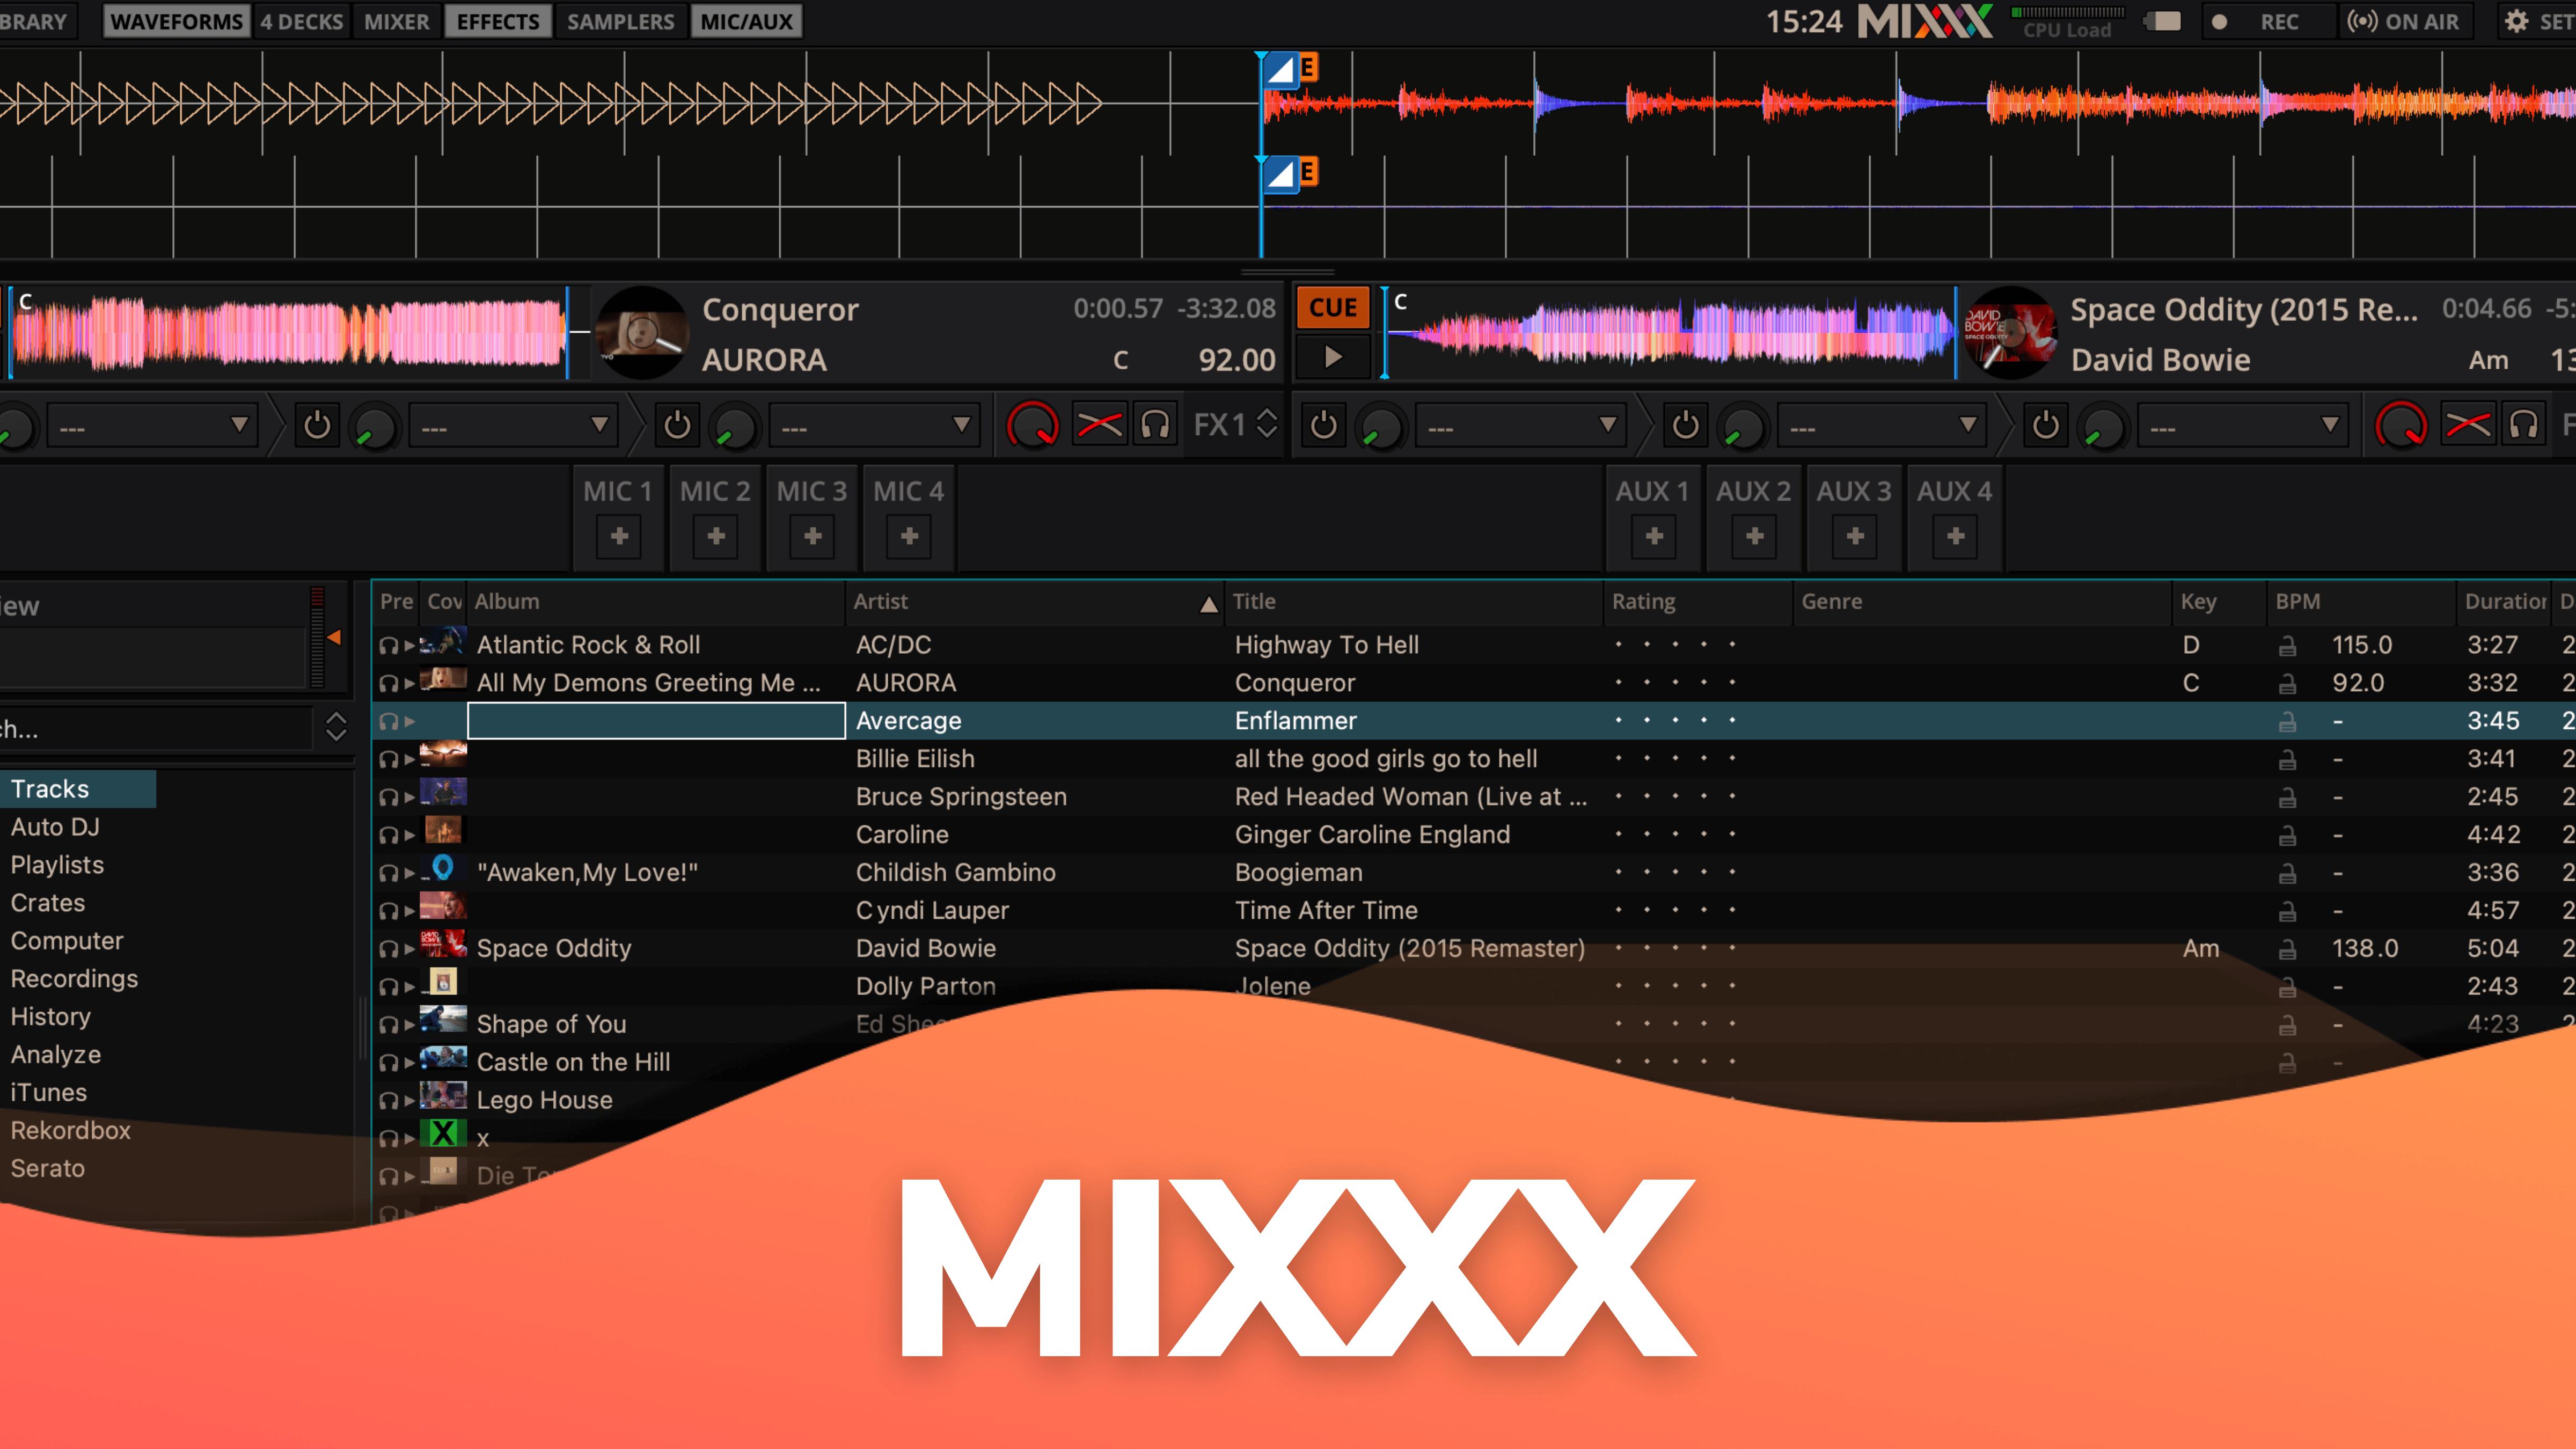 mixxx online radio broadcasting